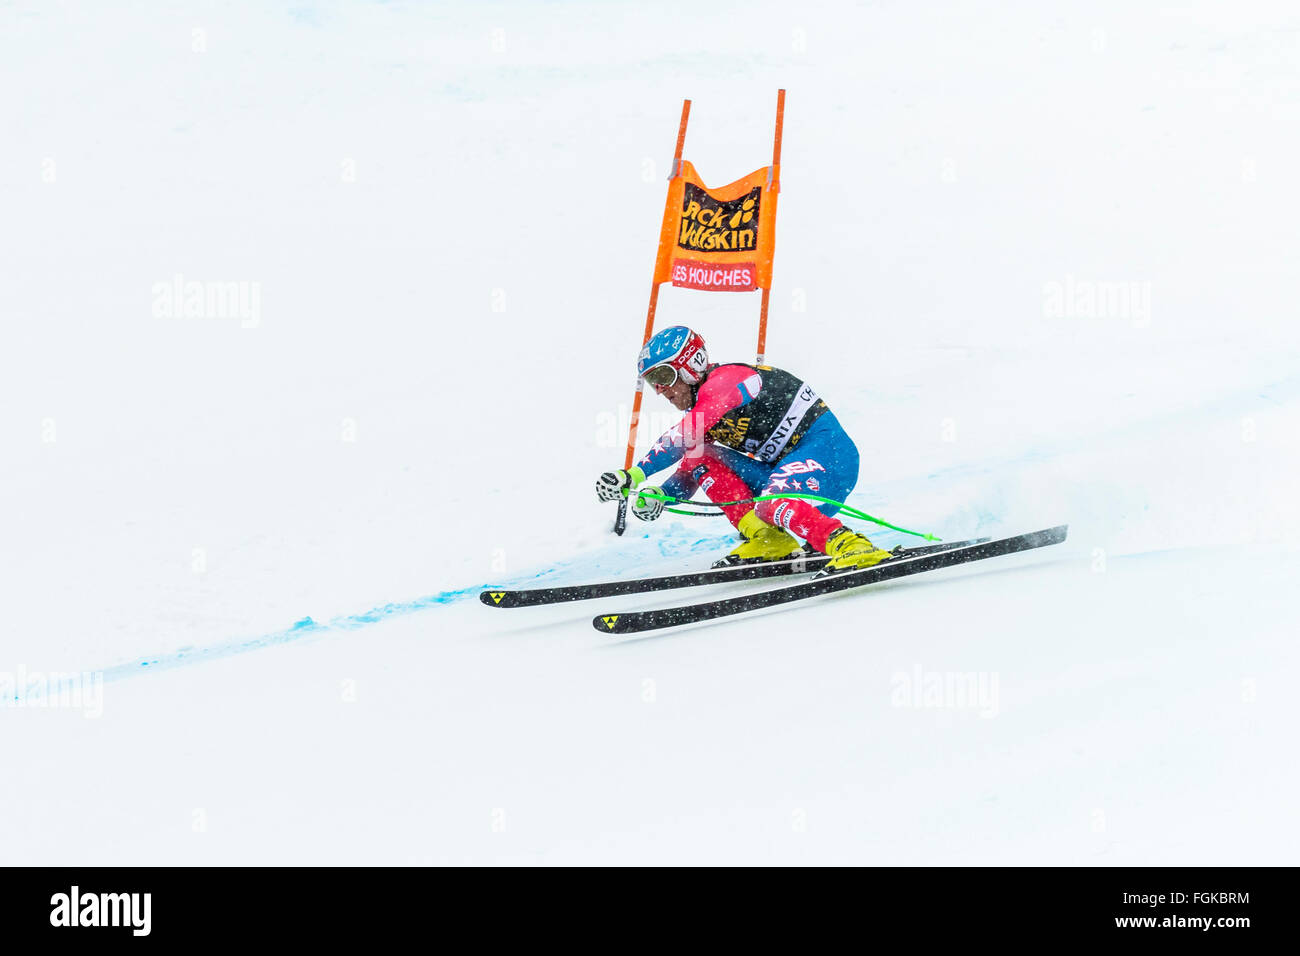 Chamonix, France. 20 Février, 2016. Membre de l'équipe de ski USA Steven NYMAN skié au podium à la 2e place. L'Audi Coupe du Monde 9e Men's downhill ont eu lieu à Chamonix, France avec un 'jour blanc' (ciel gris et télévision la lumière) et une neige légère. Le podium était - 1- PARIS Dominik (ITA) 1:58,38 2- Steven NYMAN (USA) 1:58,73 3- Beat FEUZ (SUI) 1:58,77 AUDI FIS Ski World Cup 2015-2016 : Crédit Genyphyr Novak/Alamy Live News Banque D'Images